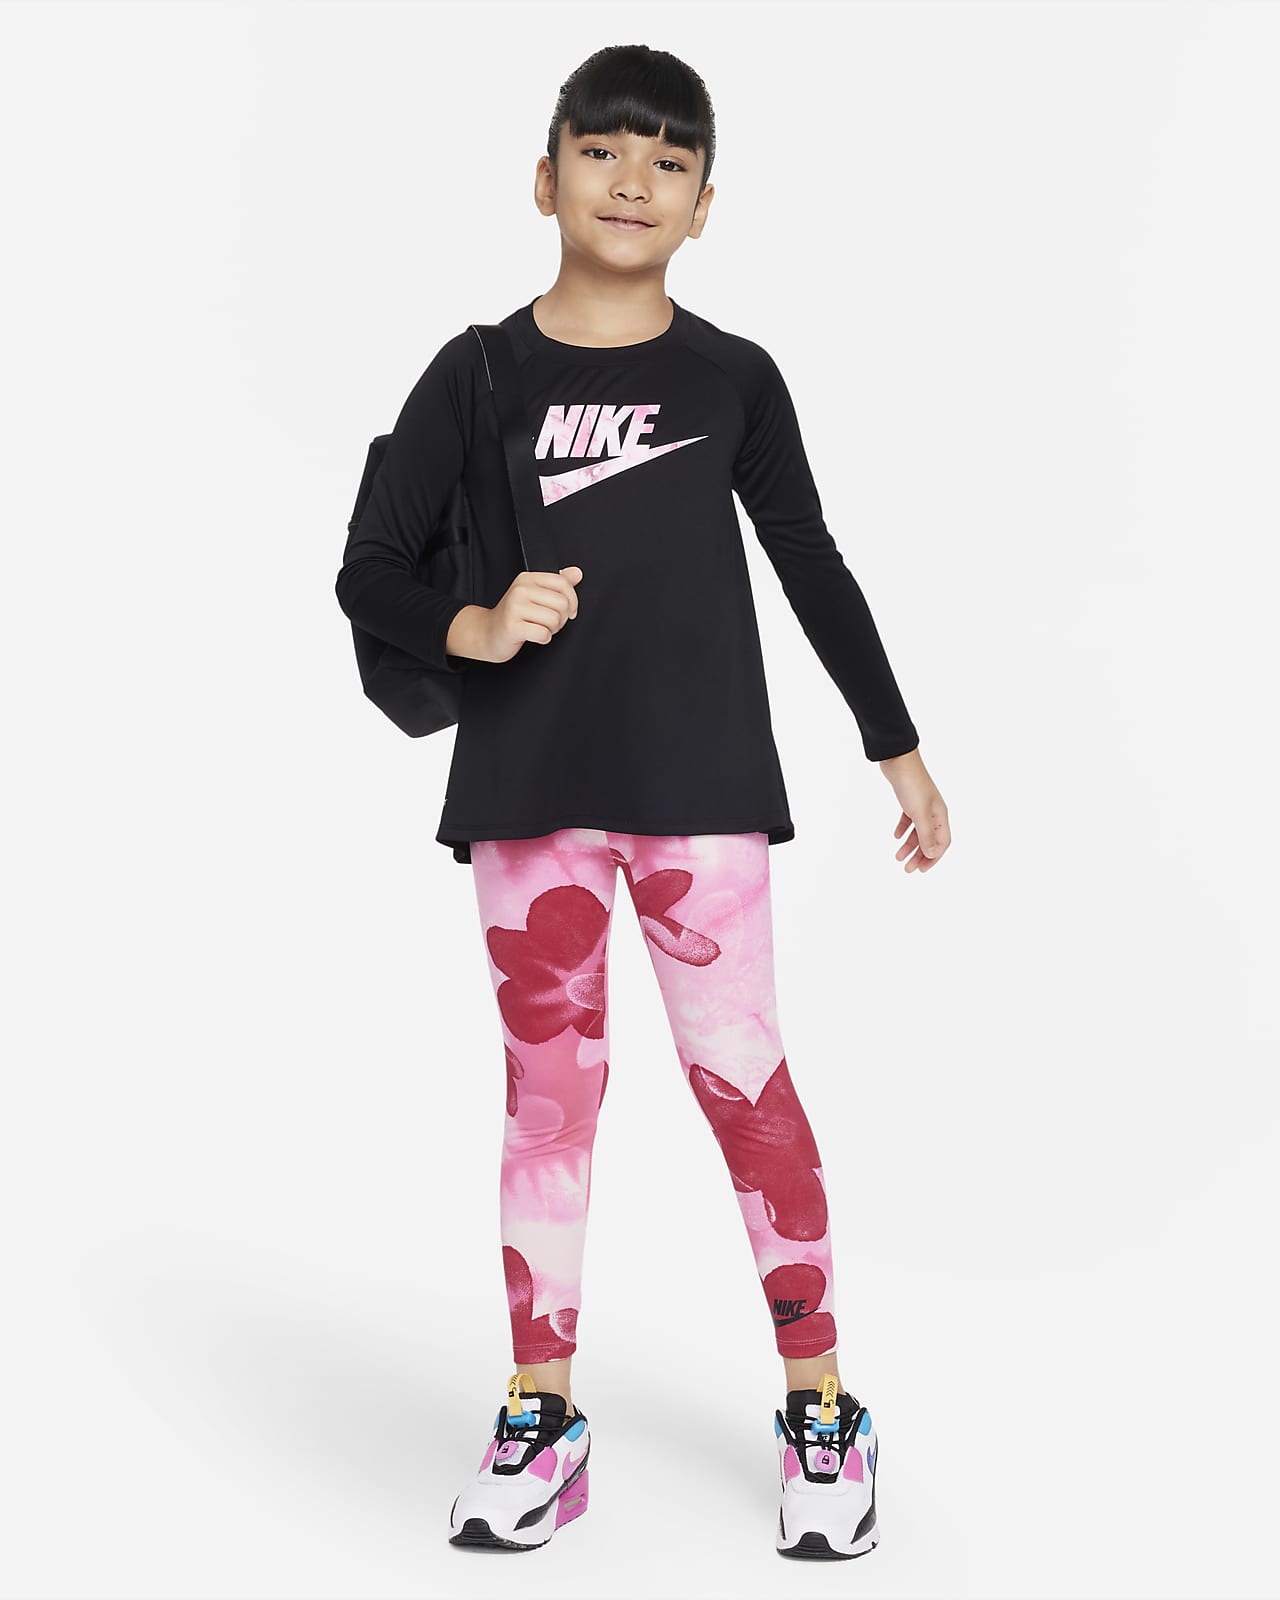 Nike Sci-Dye Dri-FIT Leggings Set Conjunt Dri-FIT de dues peces - Nen/a petit/a